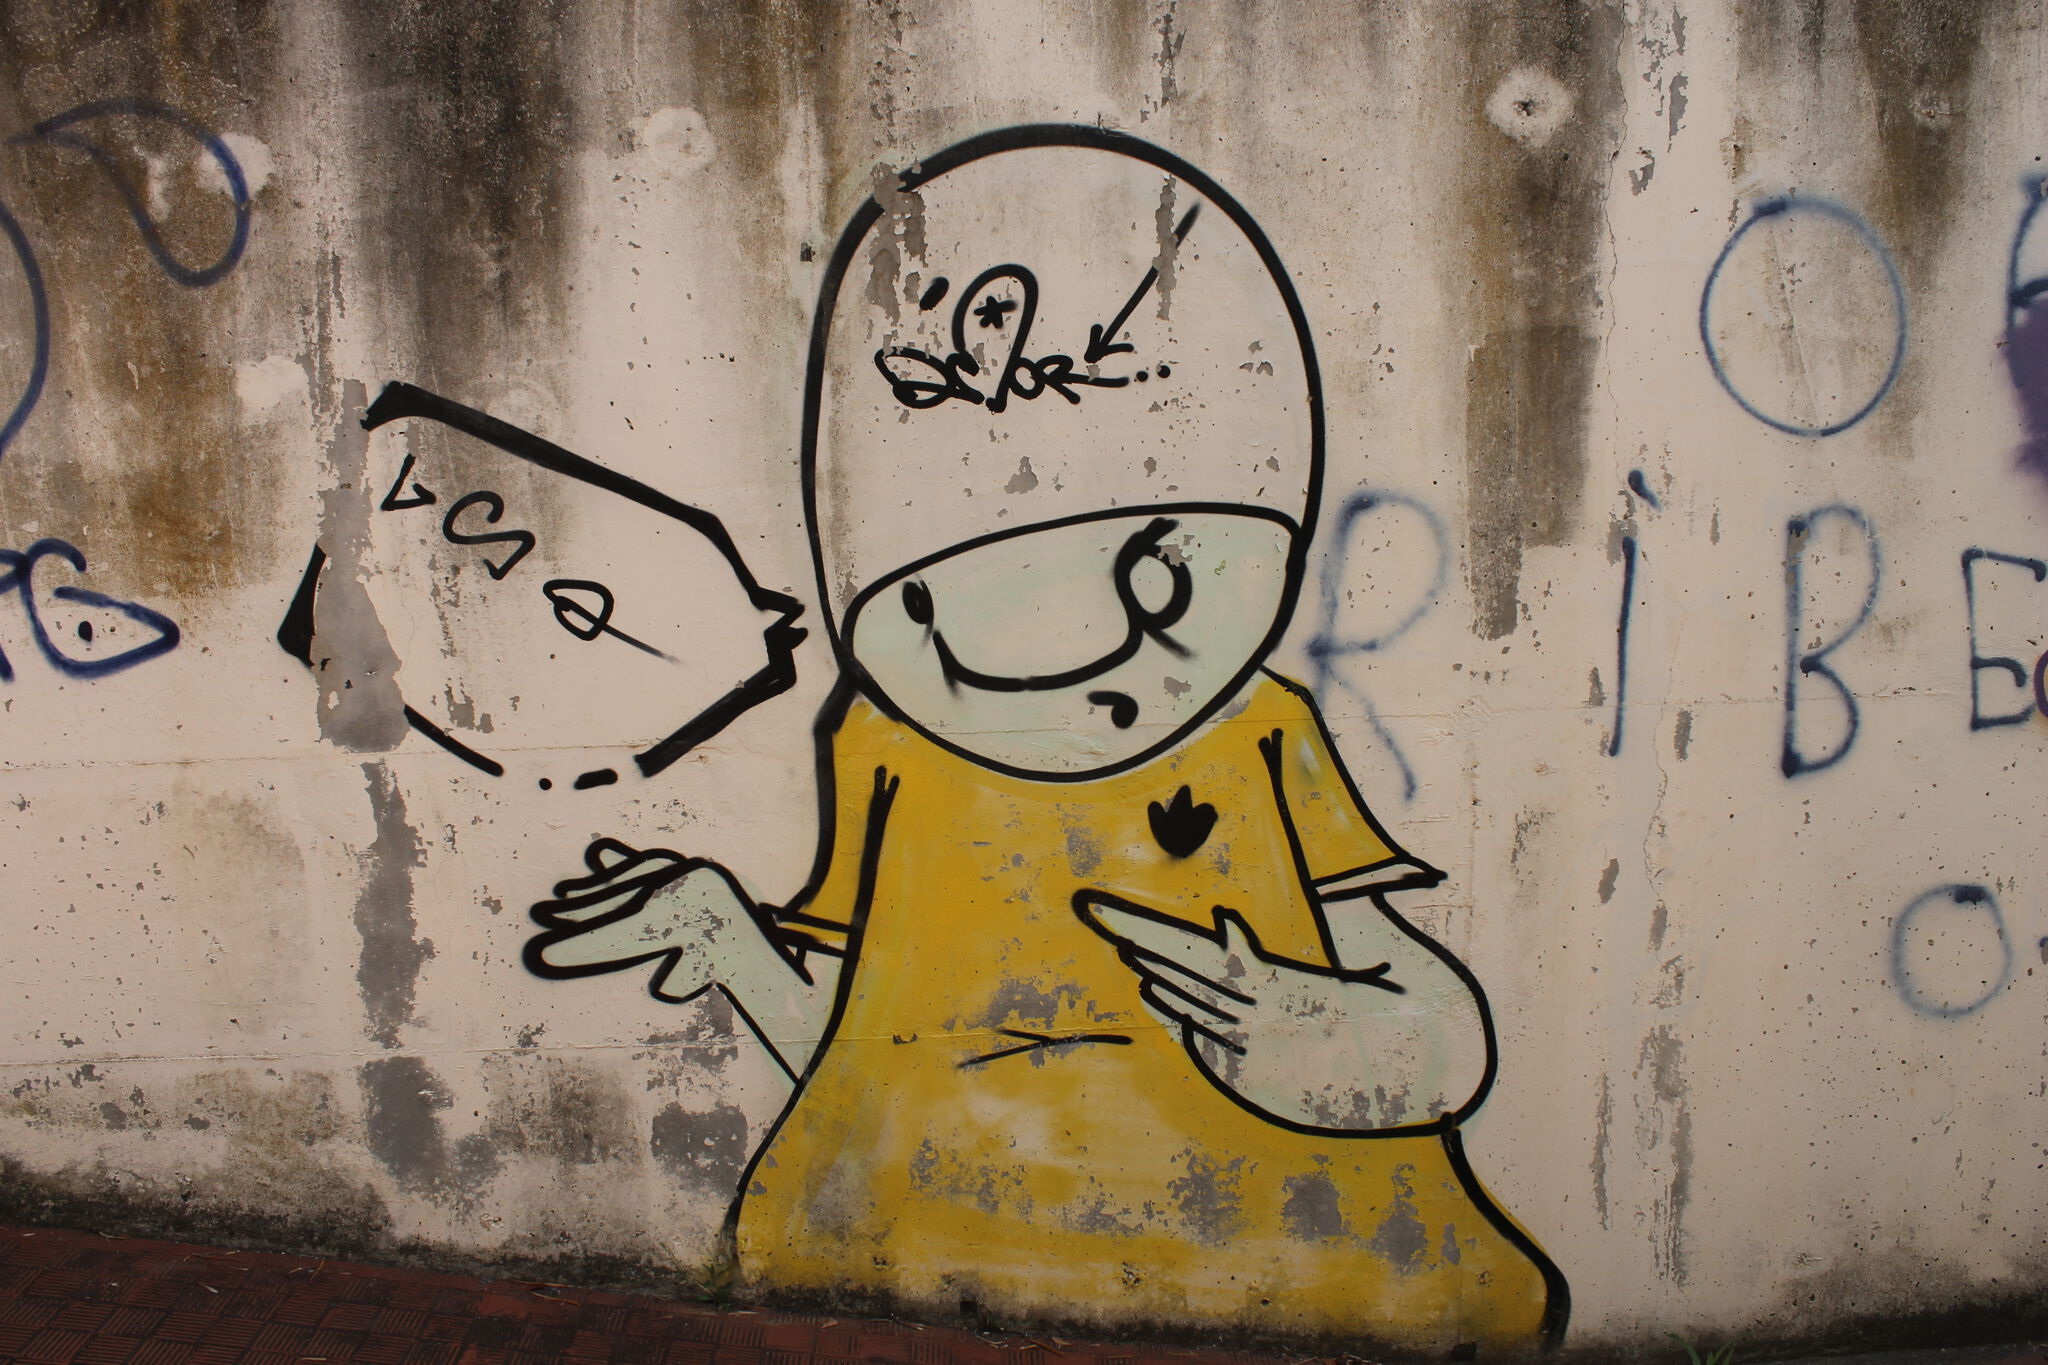 Pokus&mdash;Graffiti Zone